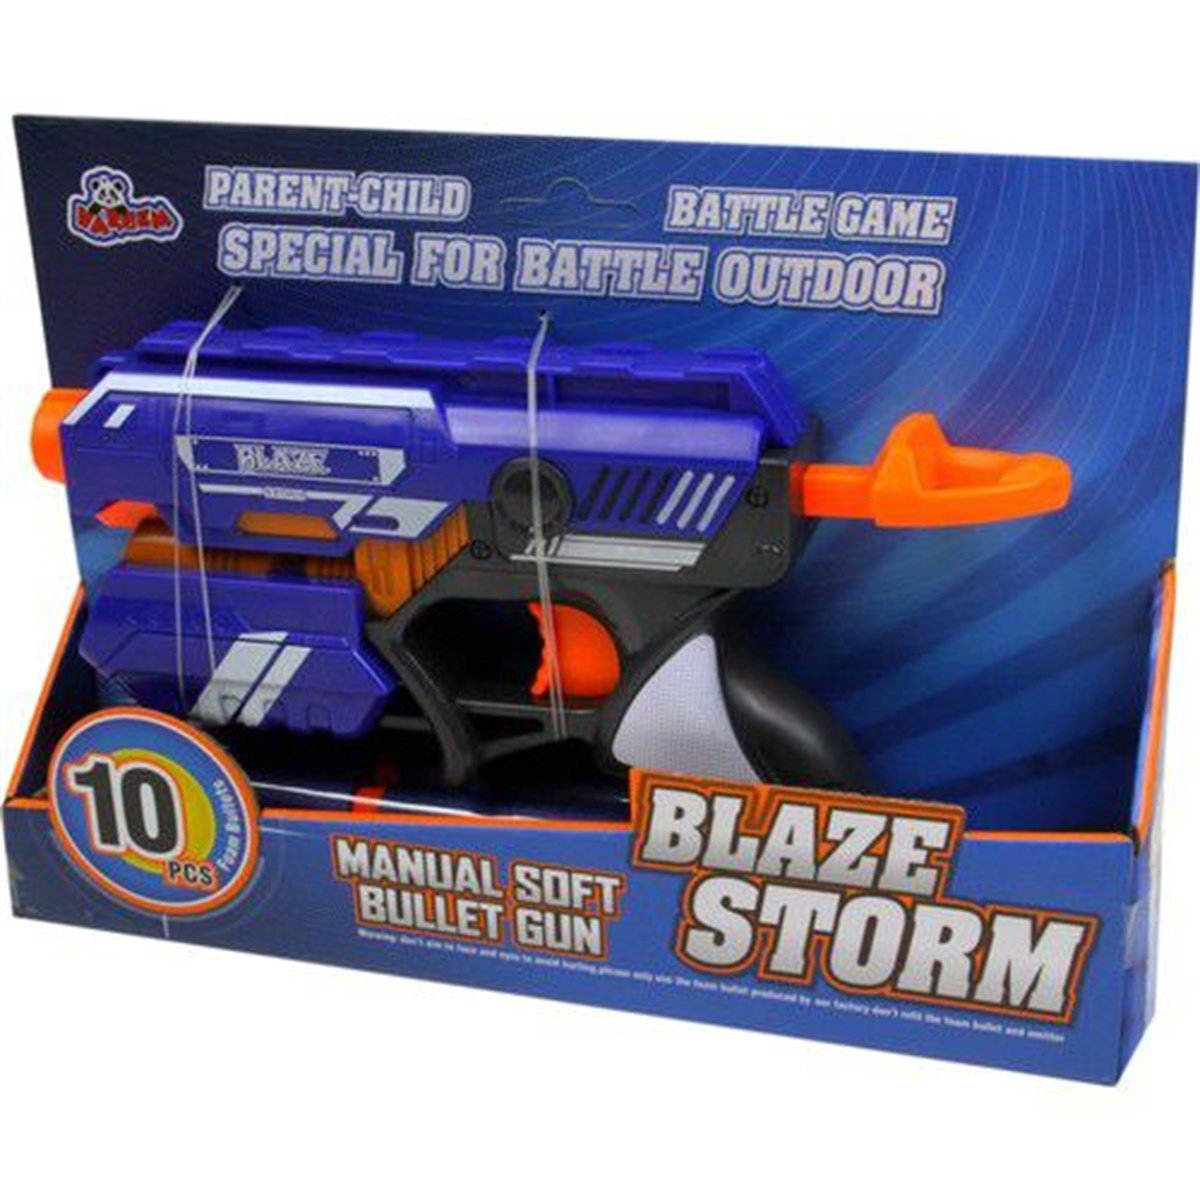 Vardem Oyuncak Blaze Storm Yumuşak Mermili Tabanca Toptan Oyuncak Fiyatı |  Samatlı Online B2B